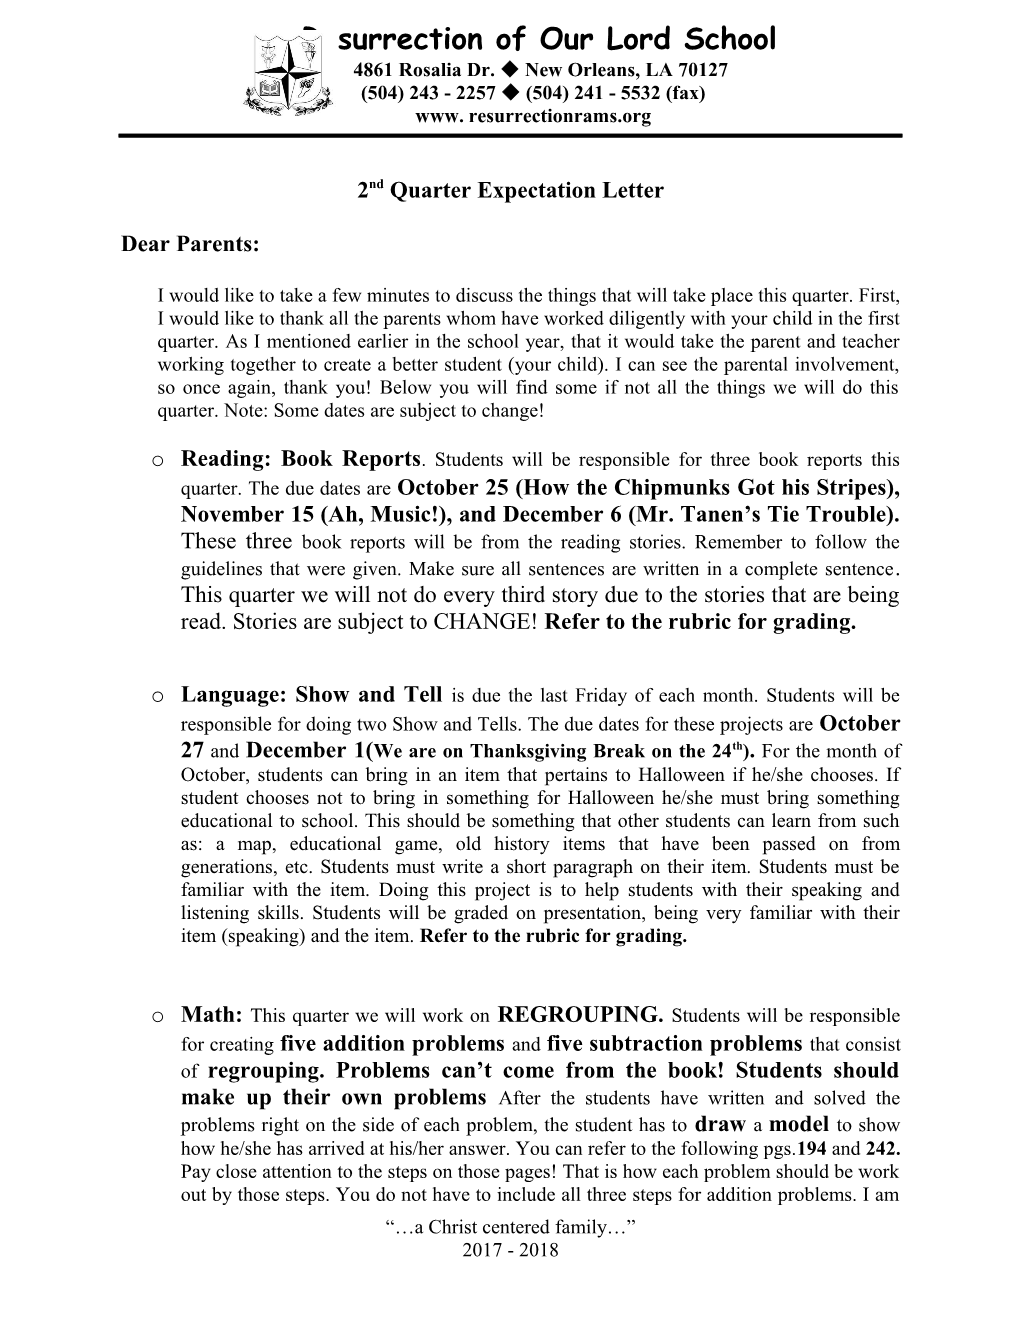 2Nd Quarter Expectation Letter